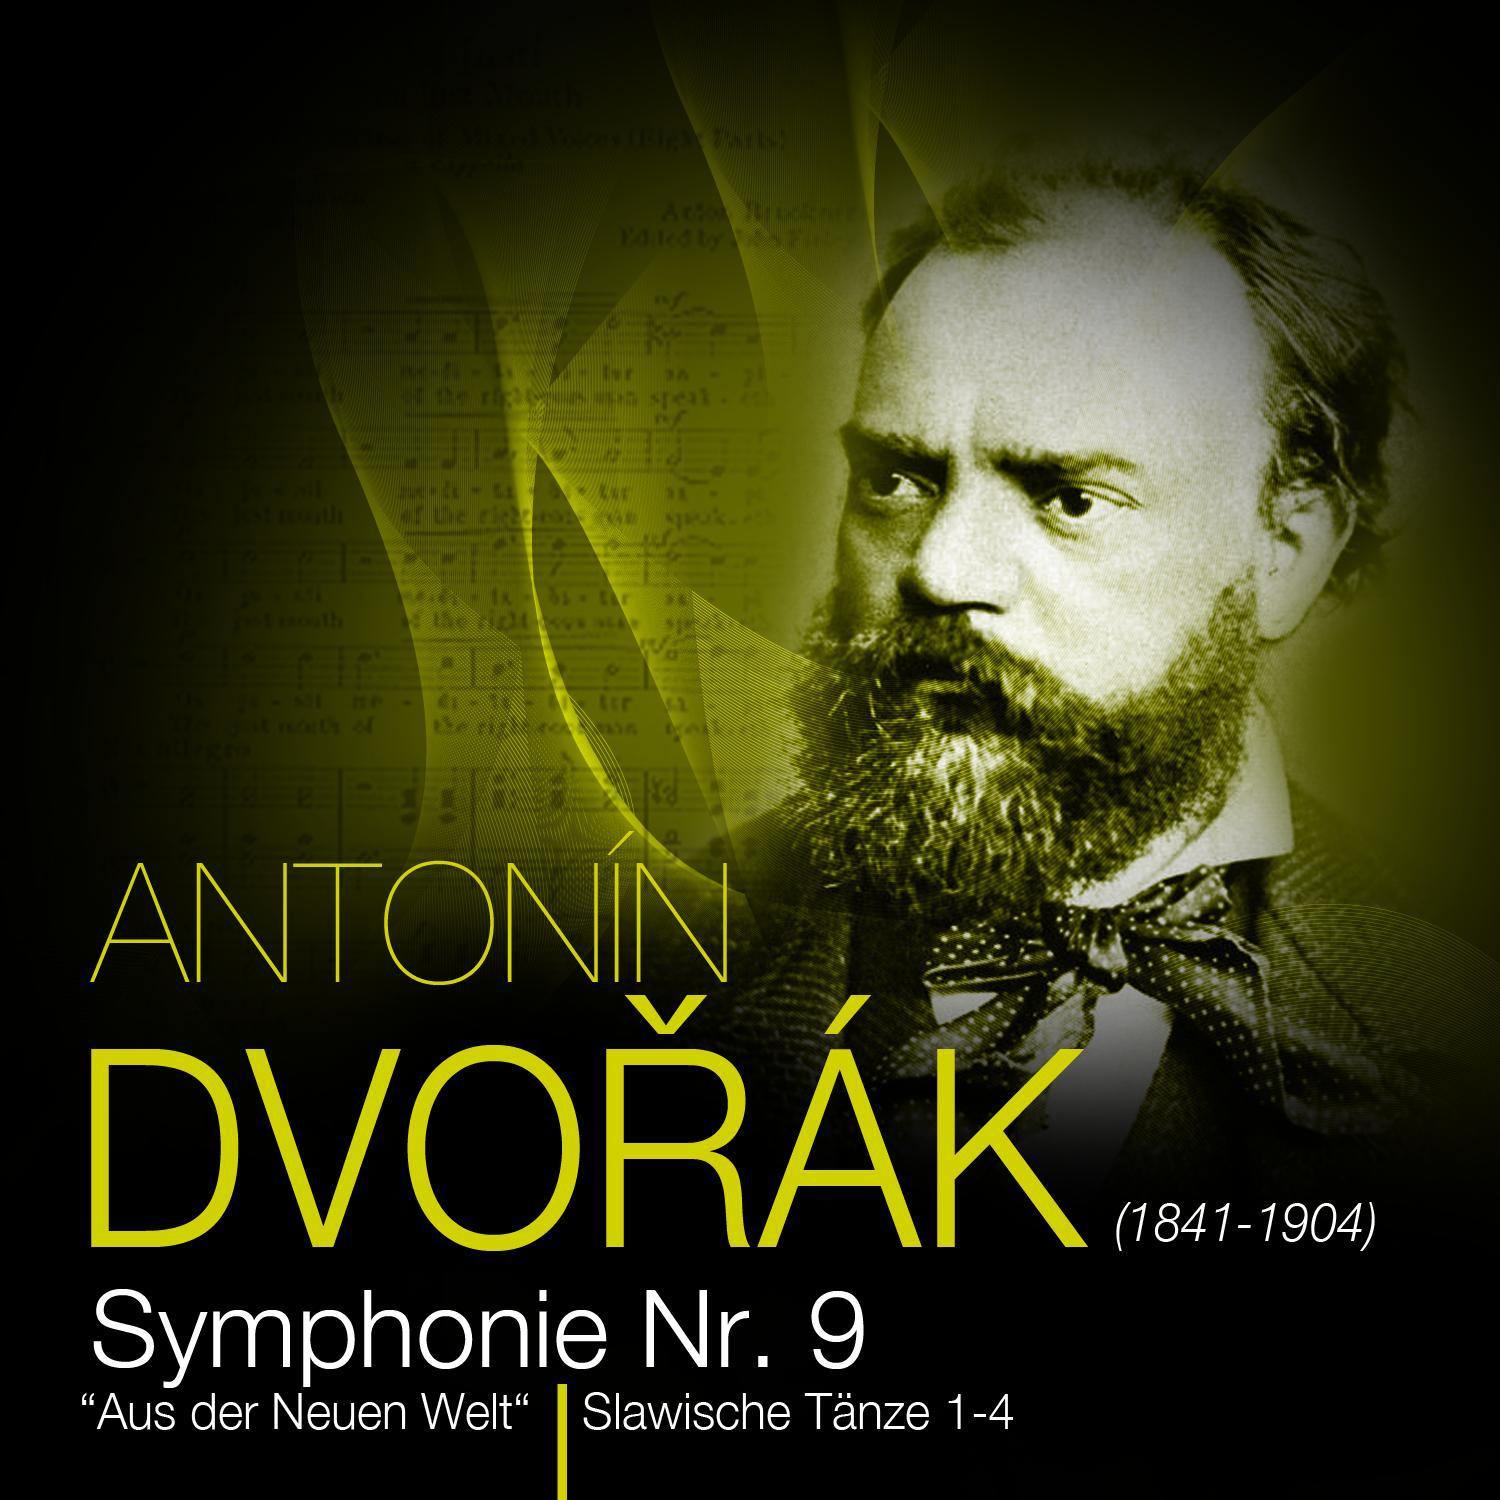 Antoni n Dvoa k  Symphonie Nr. 9 " Aus der neuen Welt" " Slawische T nze 14"